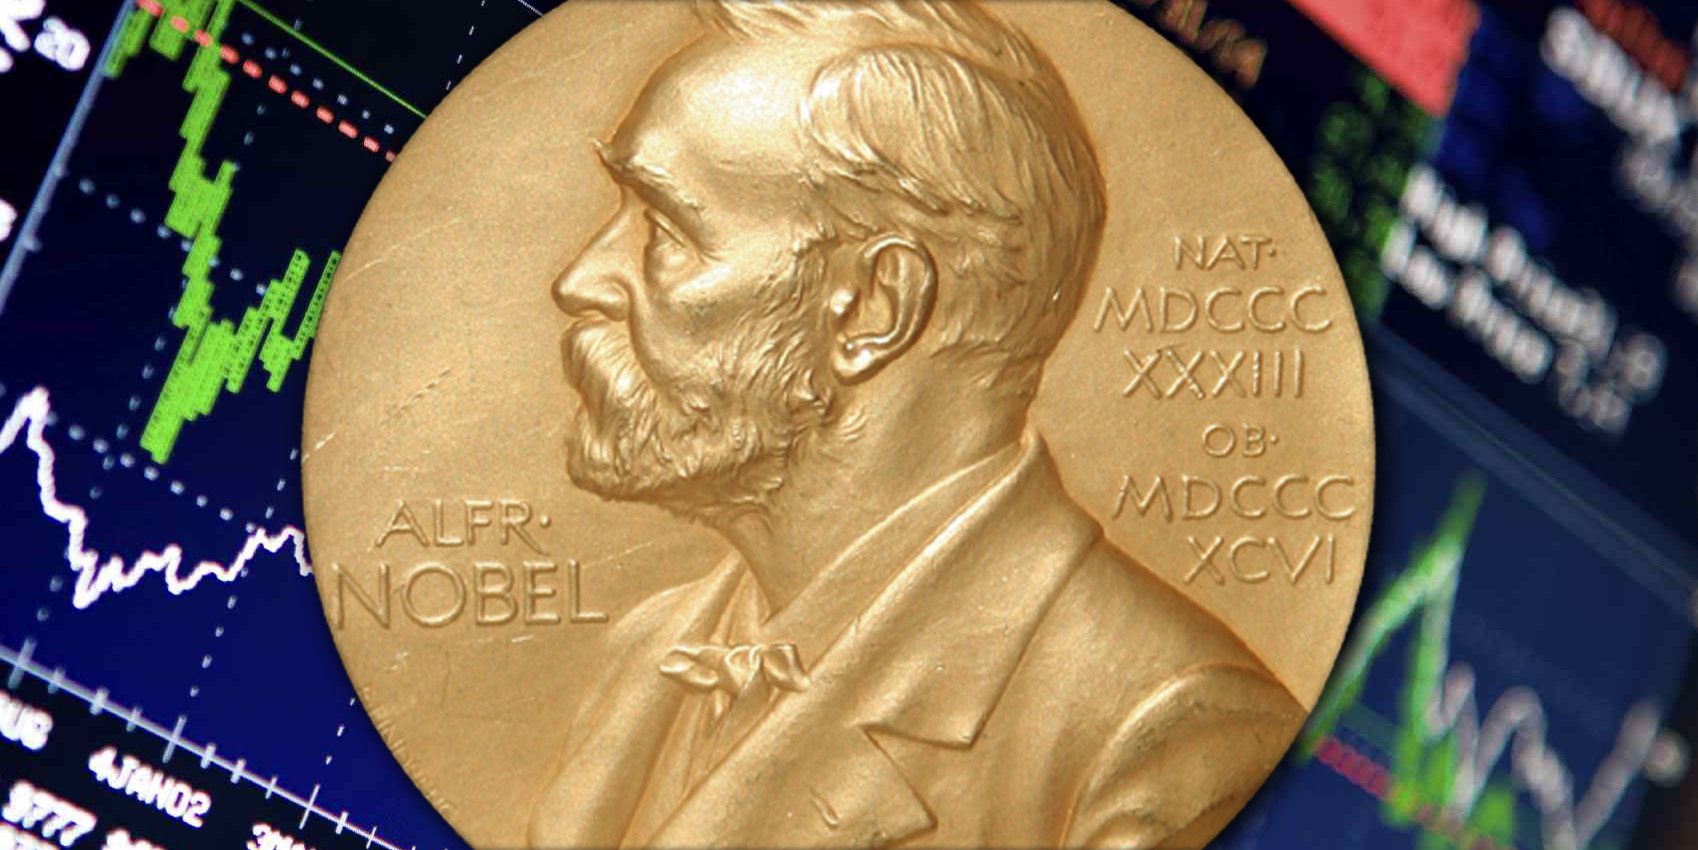 Tirole Wins Nobel Economics Prize For Work On Regulation